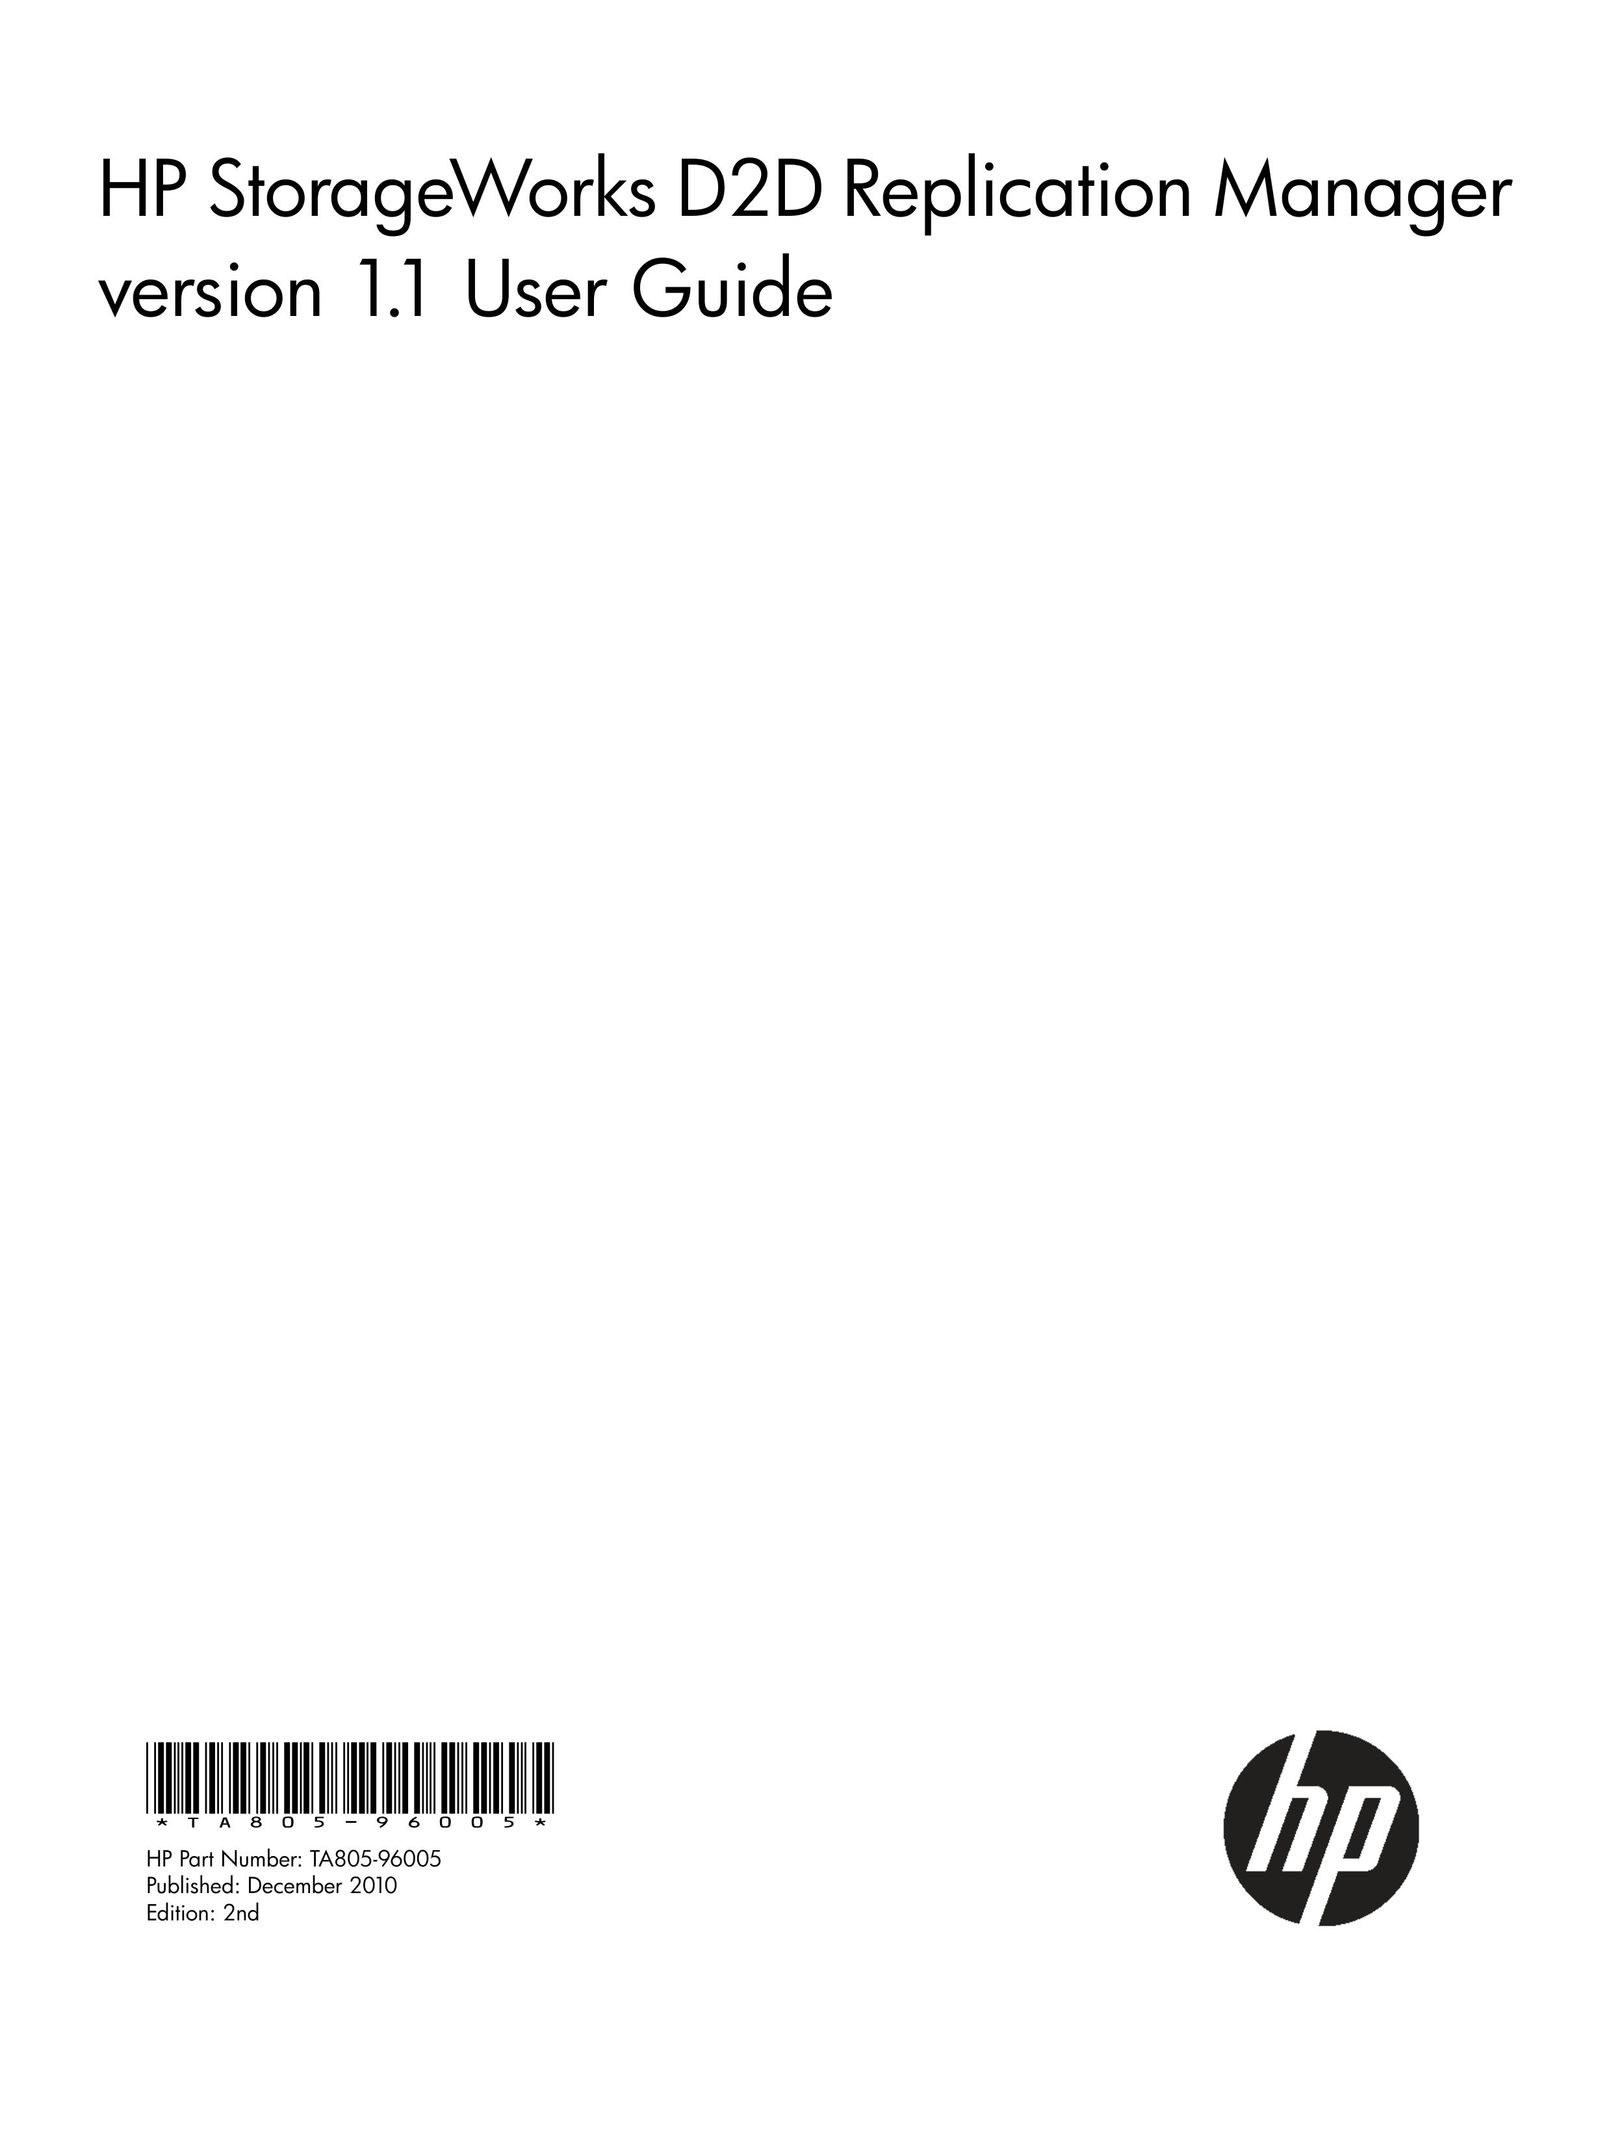 HP (Hewlett-Packard) D2D Laptop Docking Station User Manual